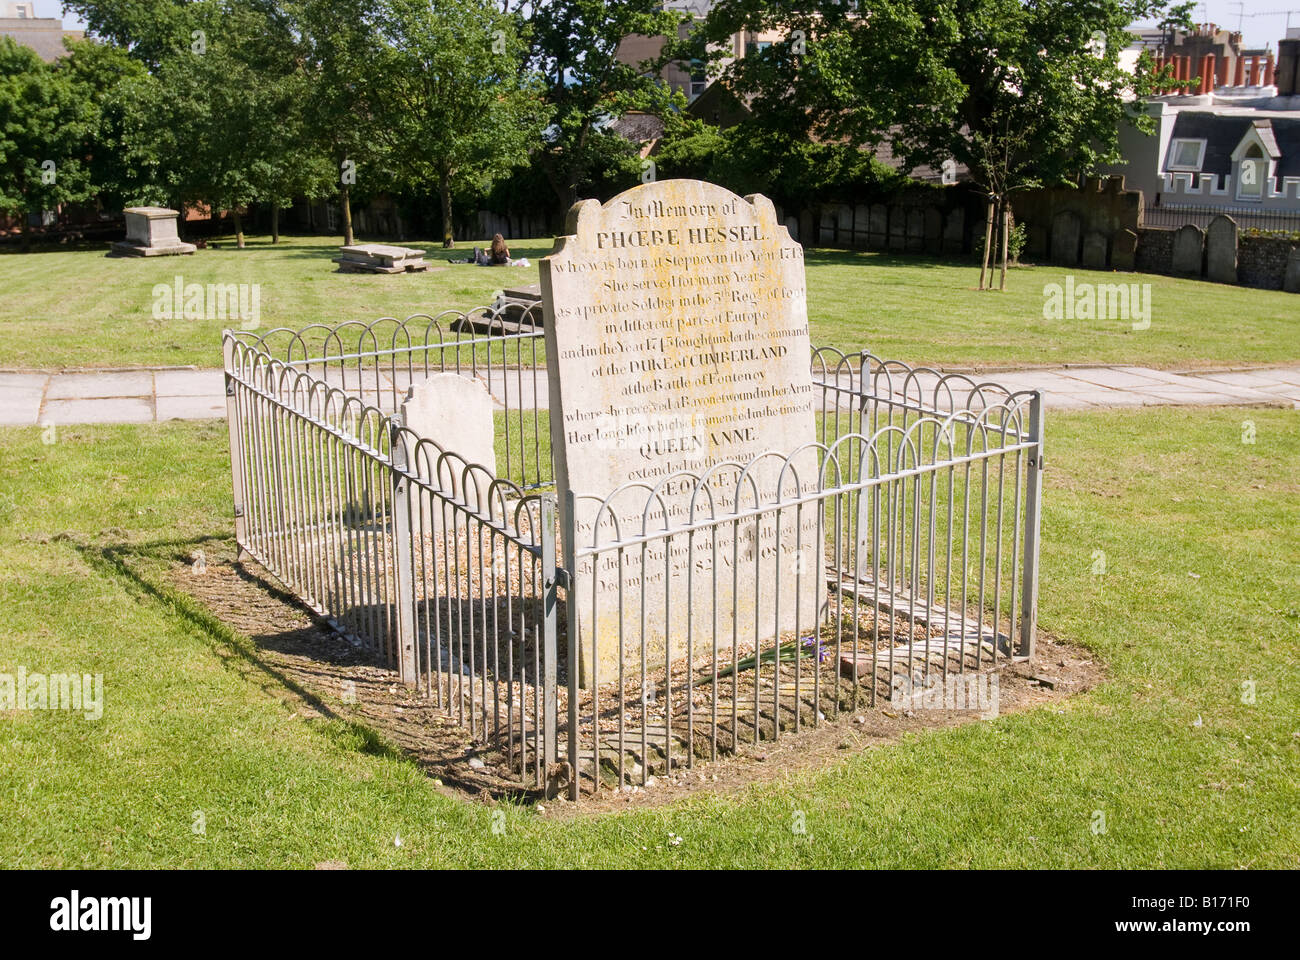 La pierre tombale de Phoebe Hessel dans le cimetière de St Nicolas, Brighton. Banque D'Images